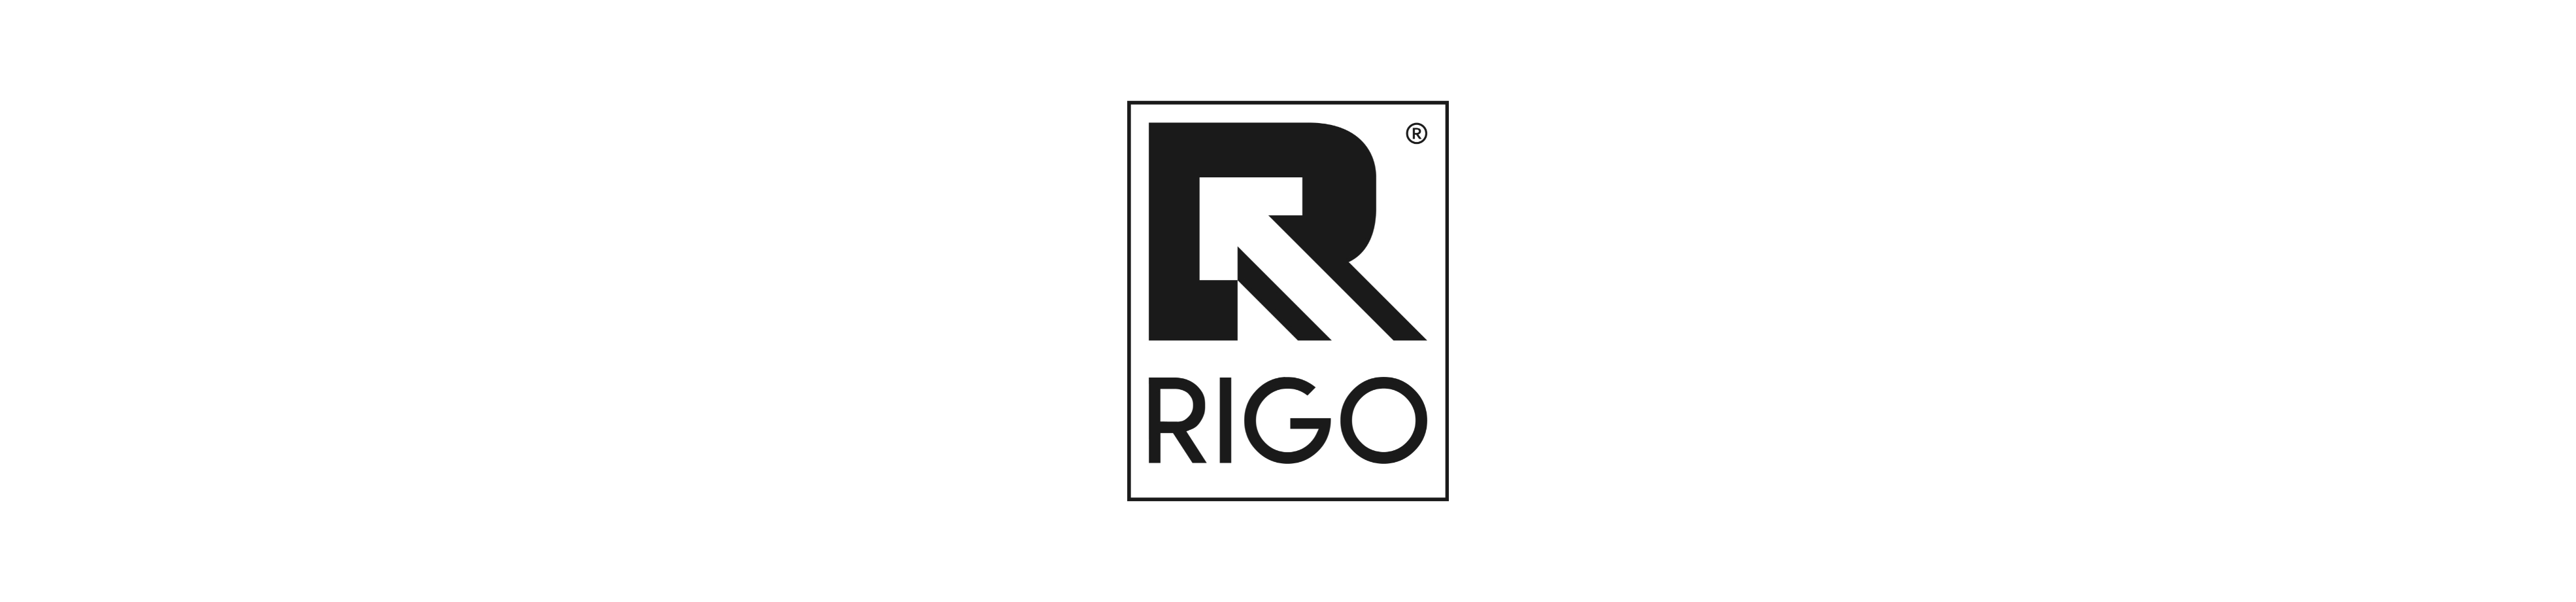 Rigo Ride-On Toys - Kids Mega Mart